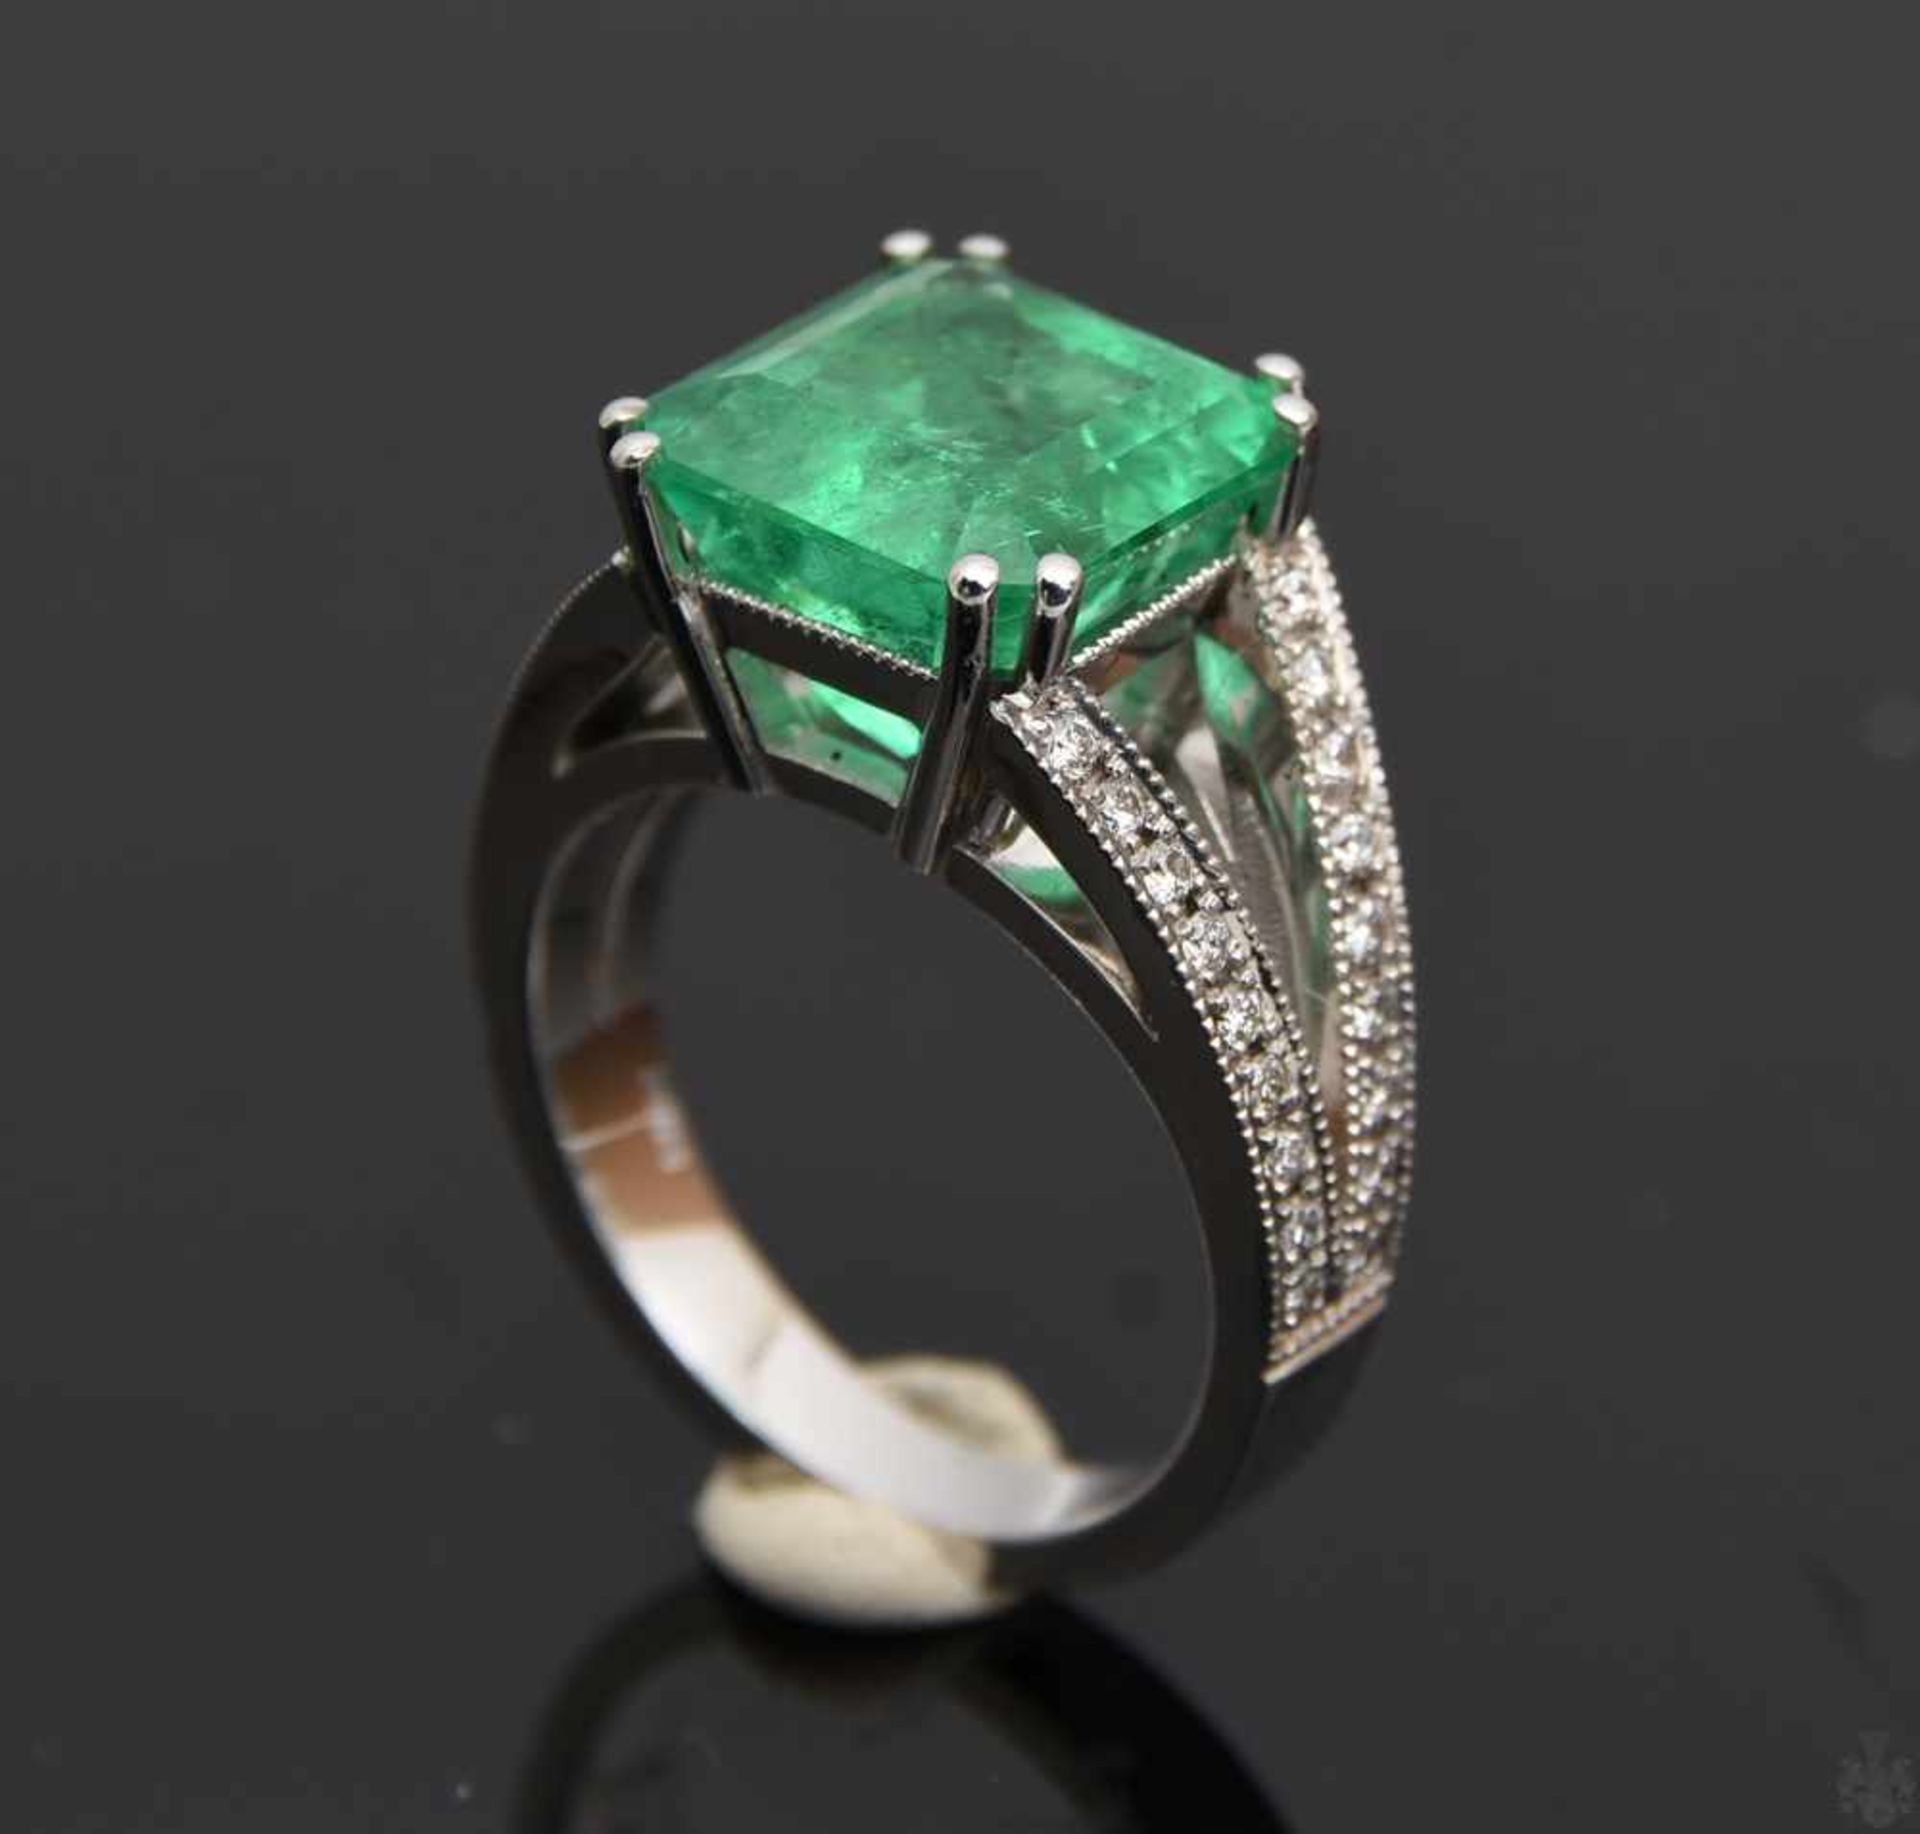 RING MIT SMARAGD UND BRILLIANTEN.Ring mit Smaragd und Brillianten, WG 750/000. 36 Brillianten zus.